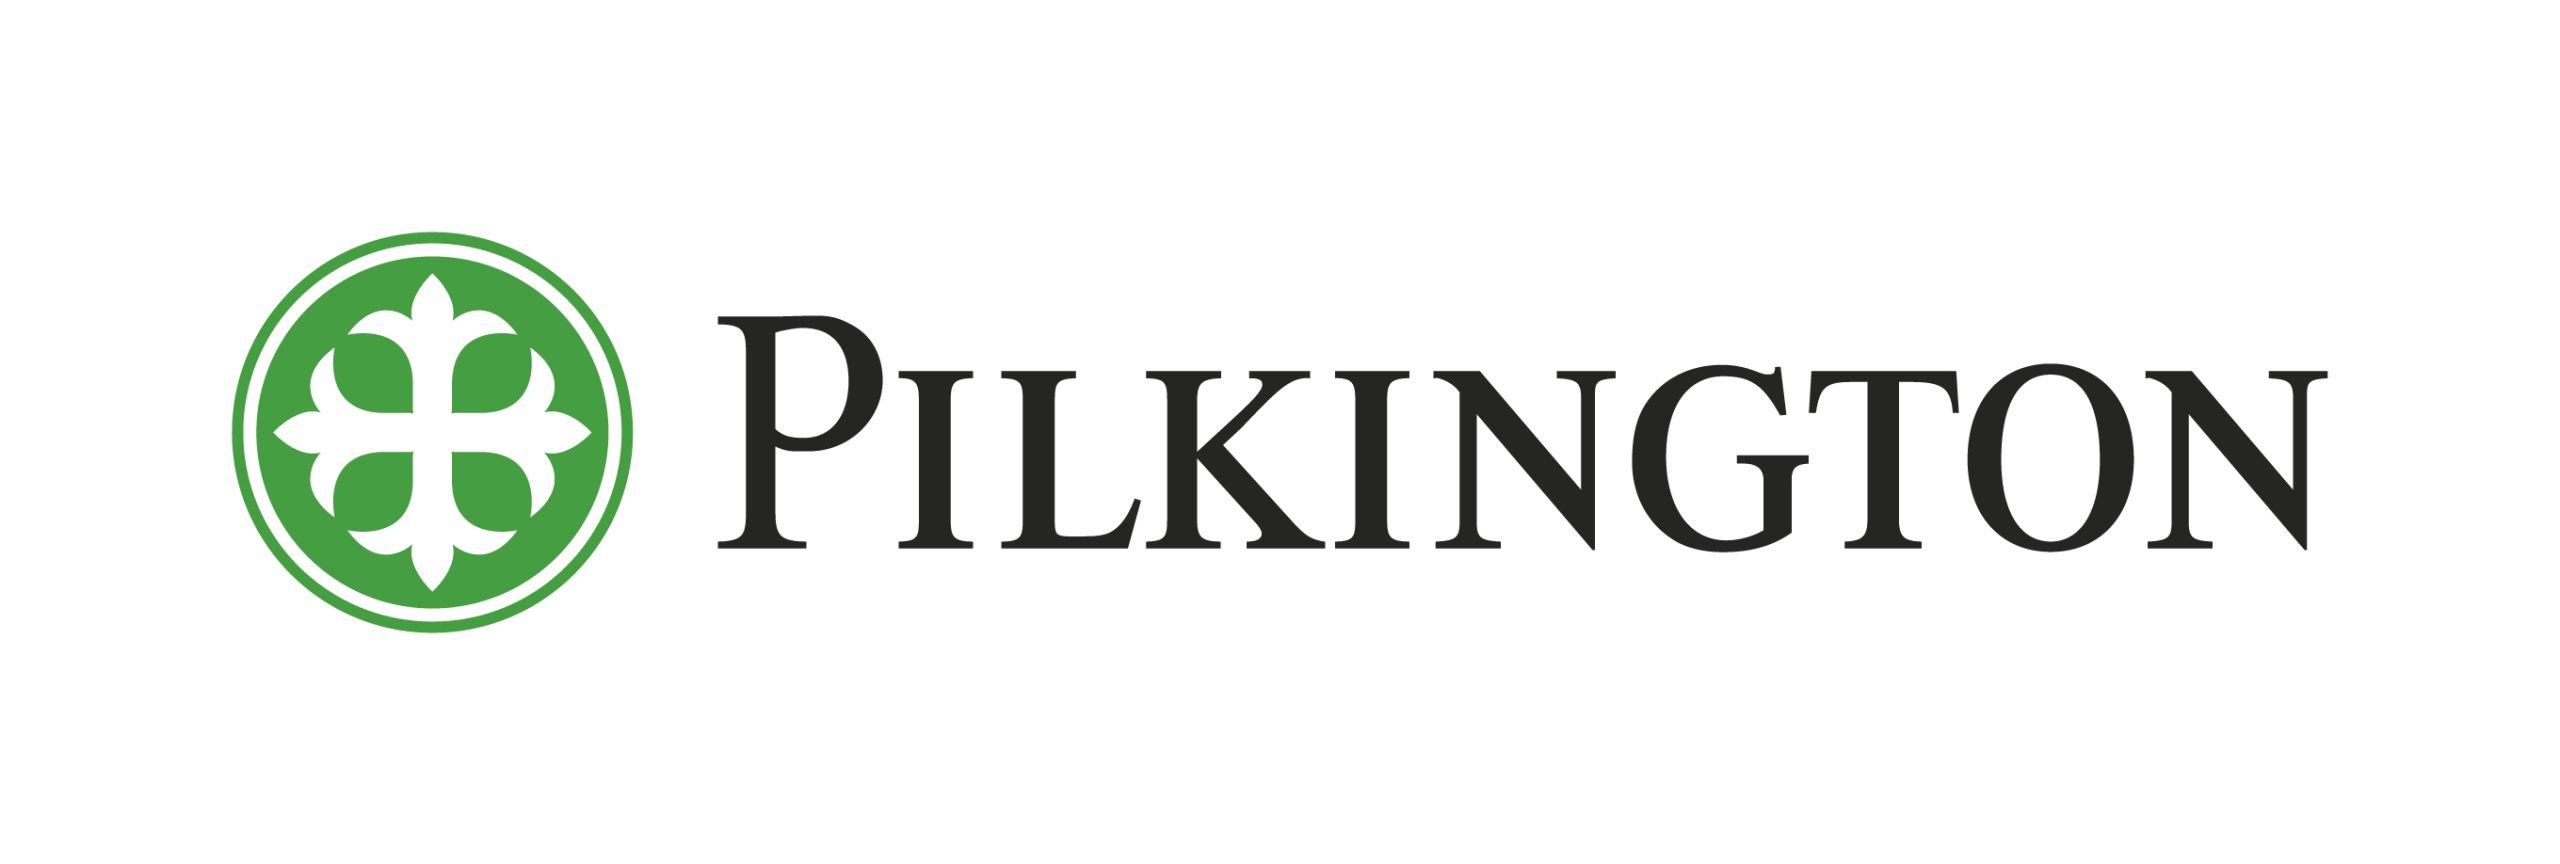 logo pilkington polska